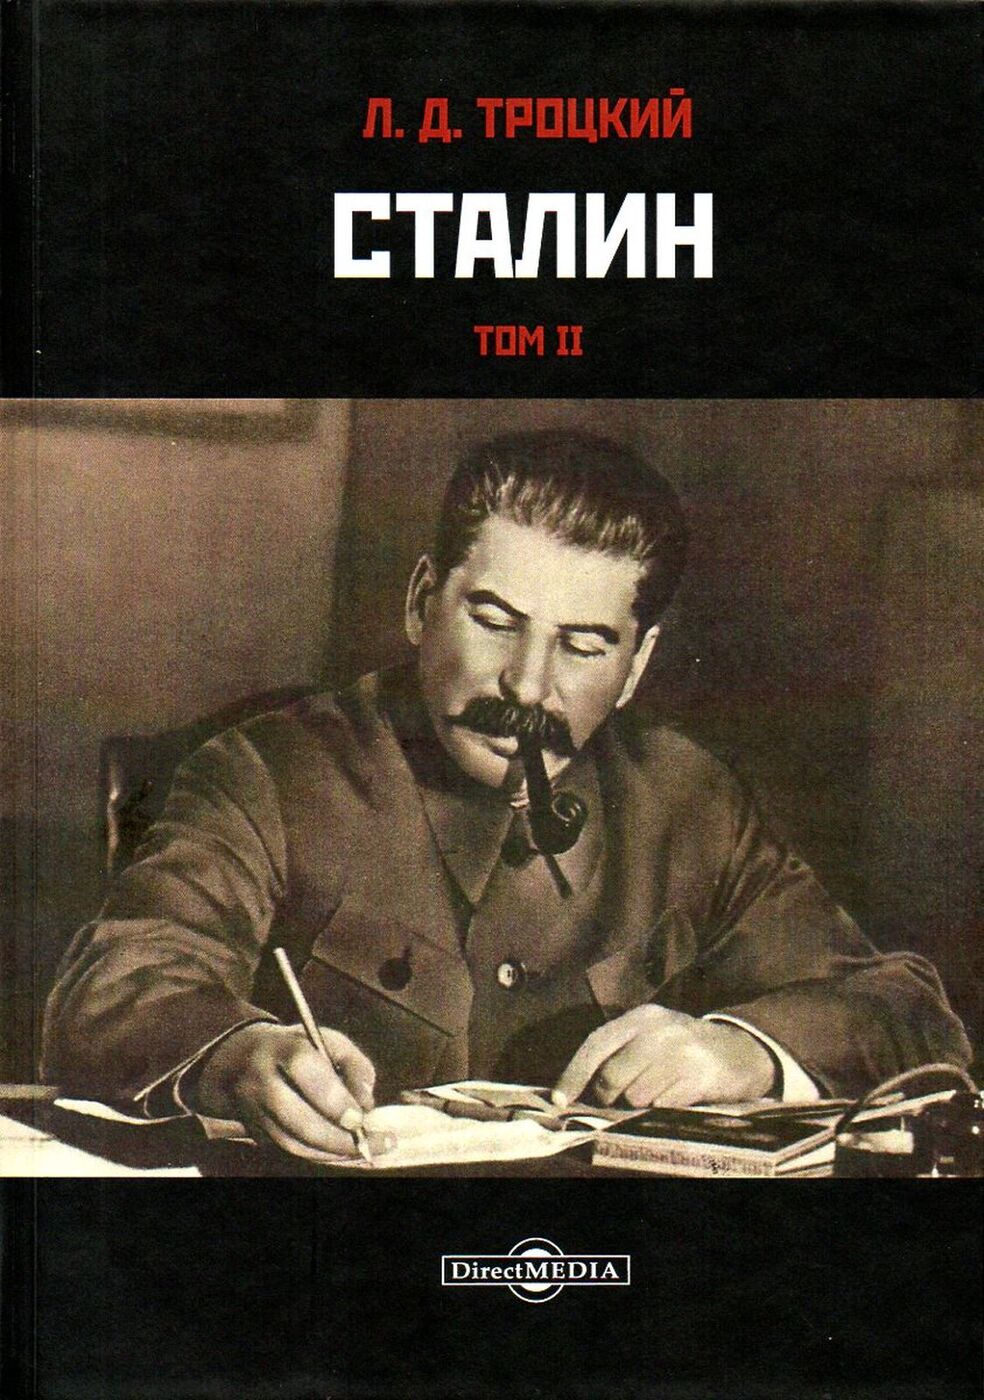 1 том сталина. Троцкий Лев Давидович "Сталин". Троцкий л.д. "Сталин. Том i". Сталин книга. Книга про Сталина.